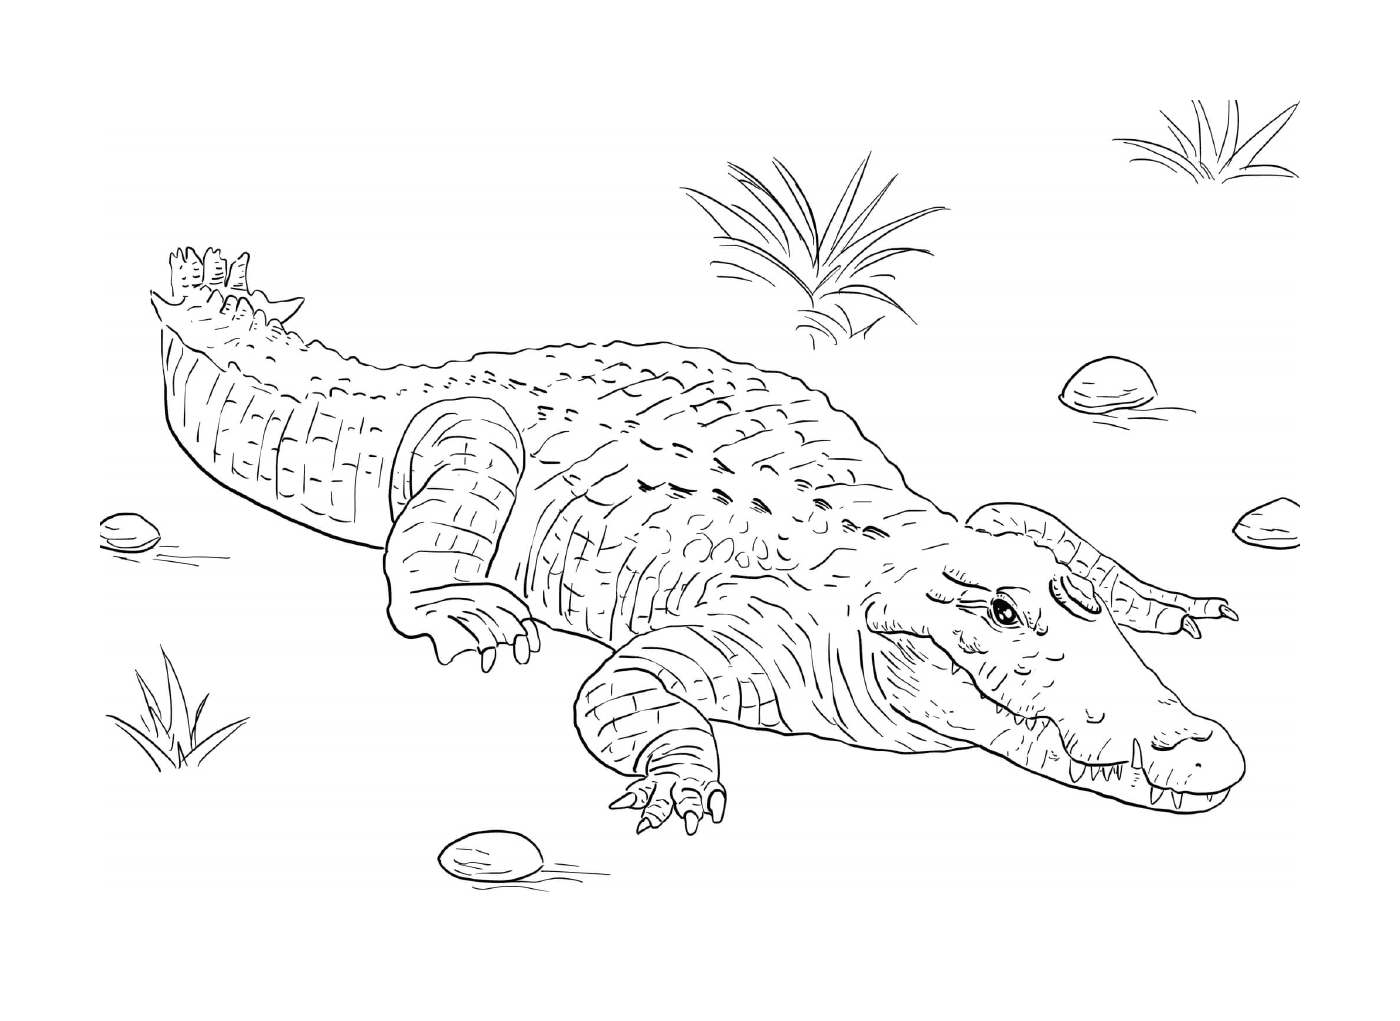   Un crocodile du Nil allongé sur le sol 